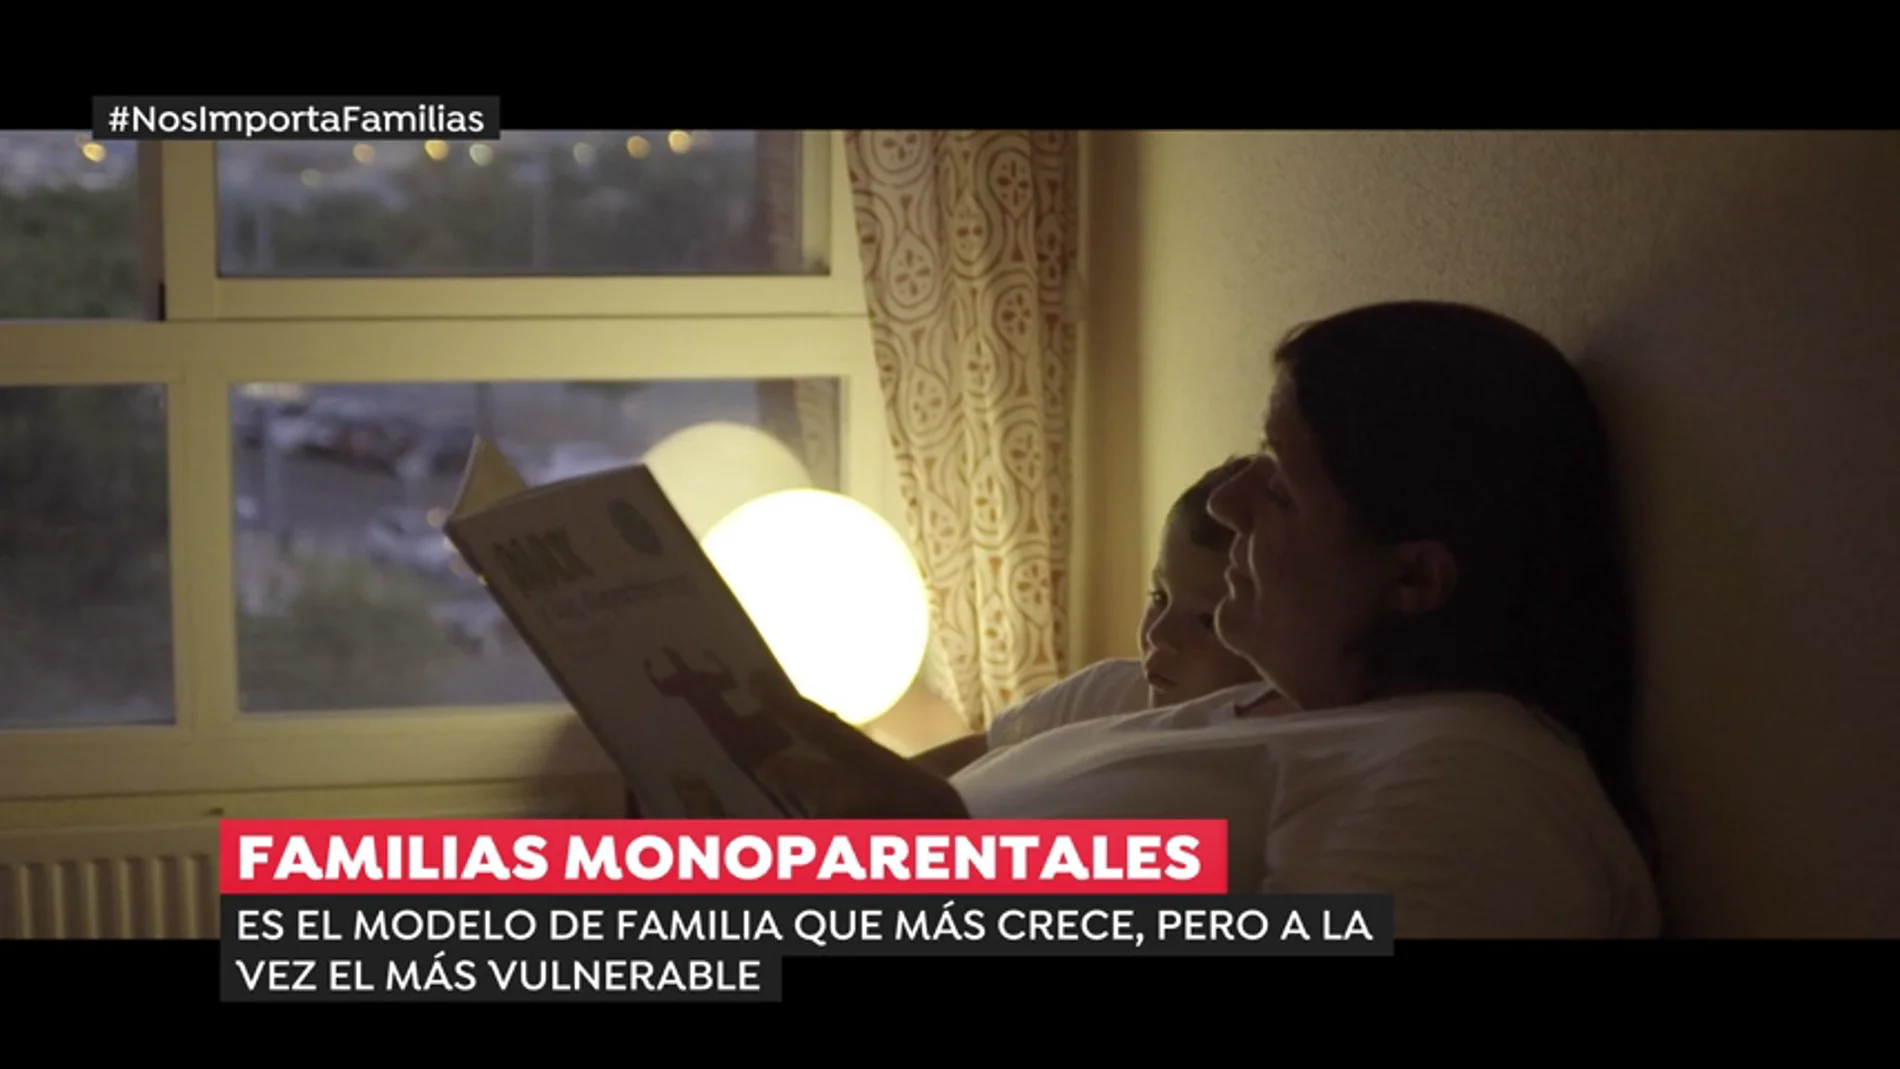 La historia de Ana Saiz, una mujer que pertenece al 40% de madres solteras en España que no tiene trabajo